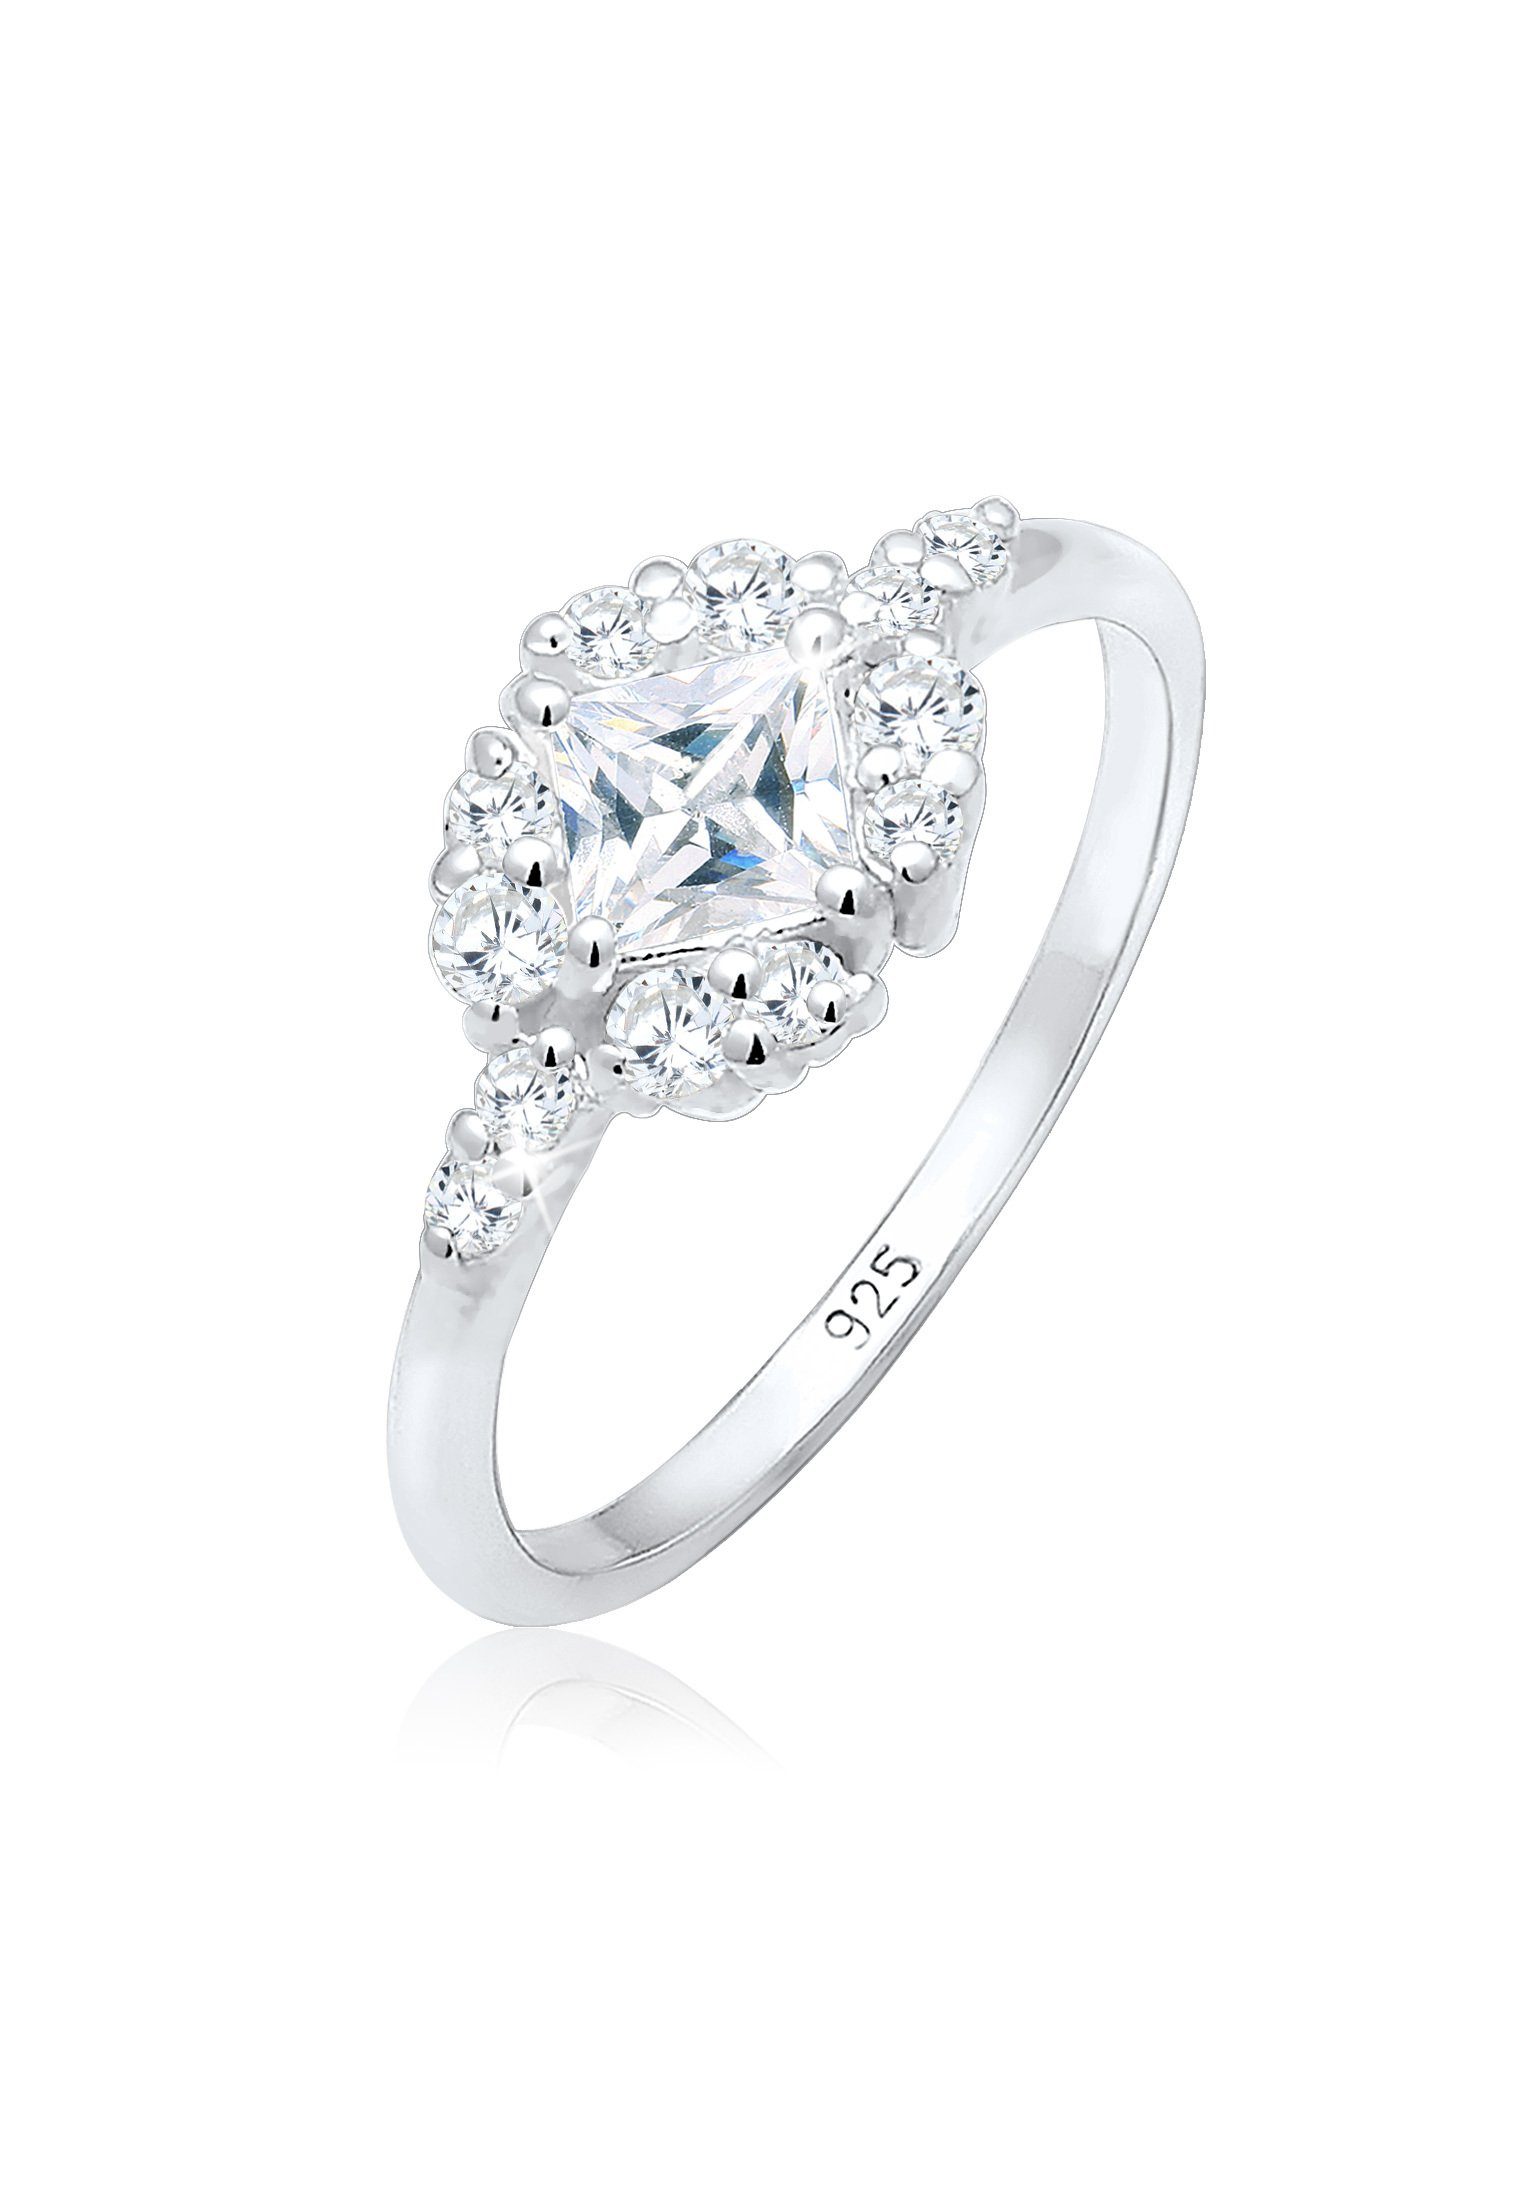 Verlobung Kristall Verlobungs-Ring Verlobungsring Silber Sterling Steine 925 Zirkonia 925 Premium Elli Romantisch aus Silber,